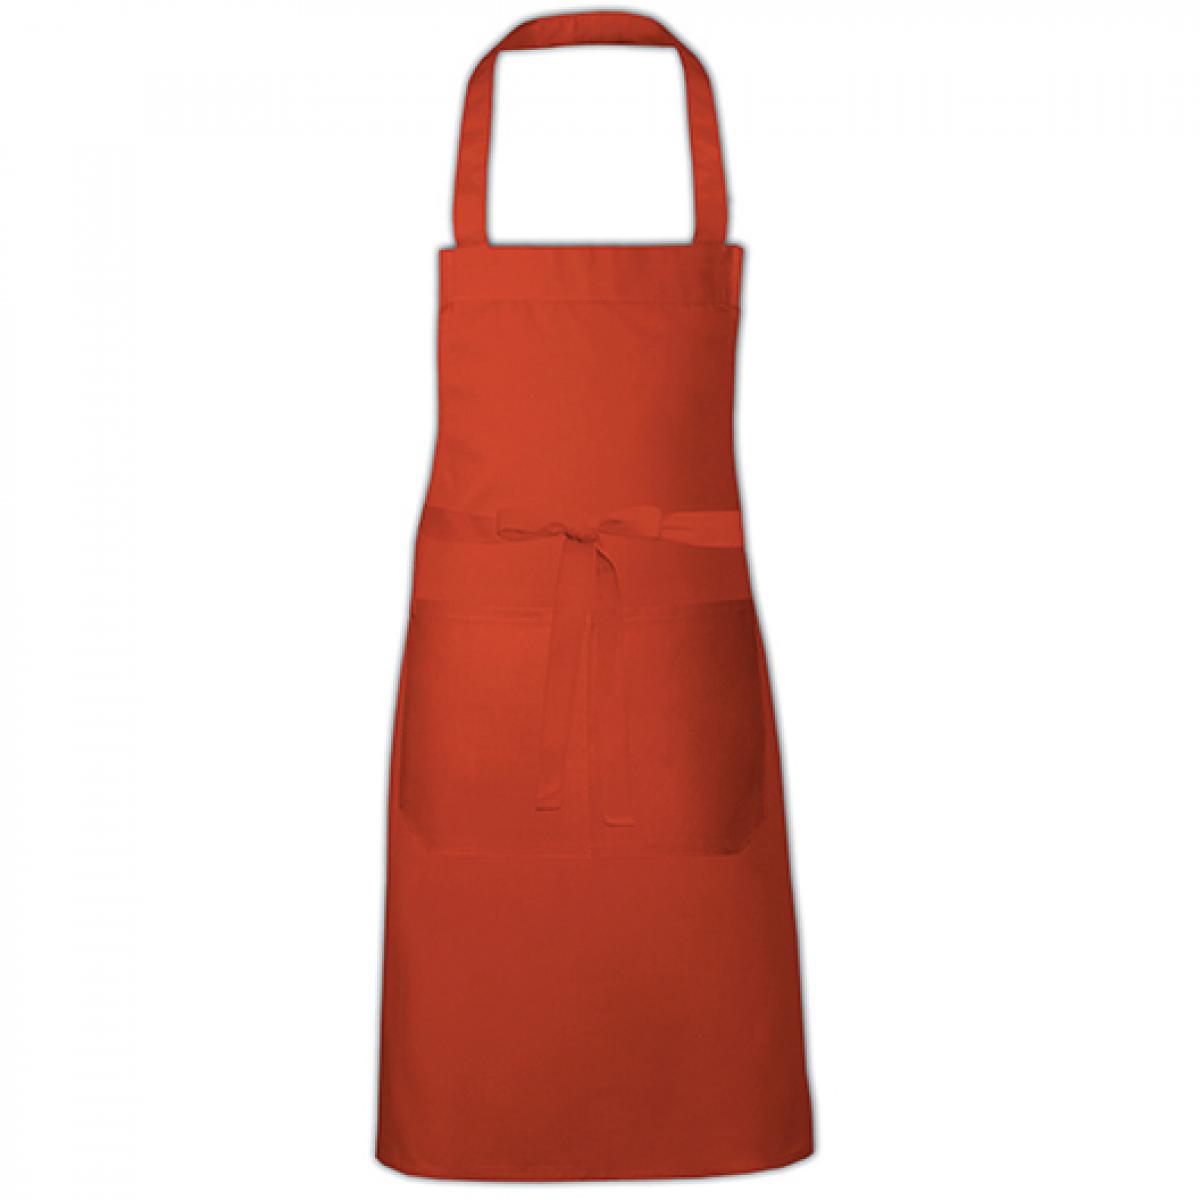 Hersteller: Link Kitchen Wear Herstellernummer: HS8073 Artikelbezeichnung: Hobby Apron - 73 x 80 cm - Waschbar bis 60 °C Farbe: Terracotta (ca. Pantone 4840)